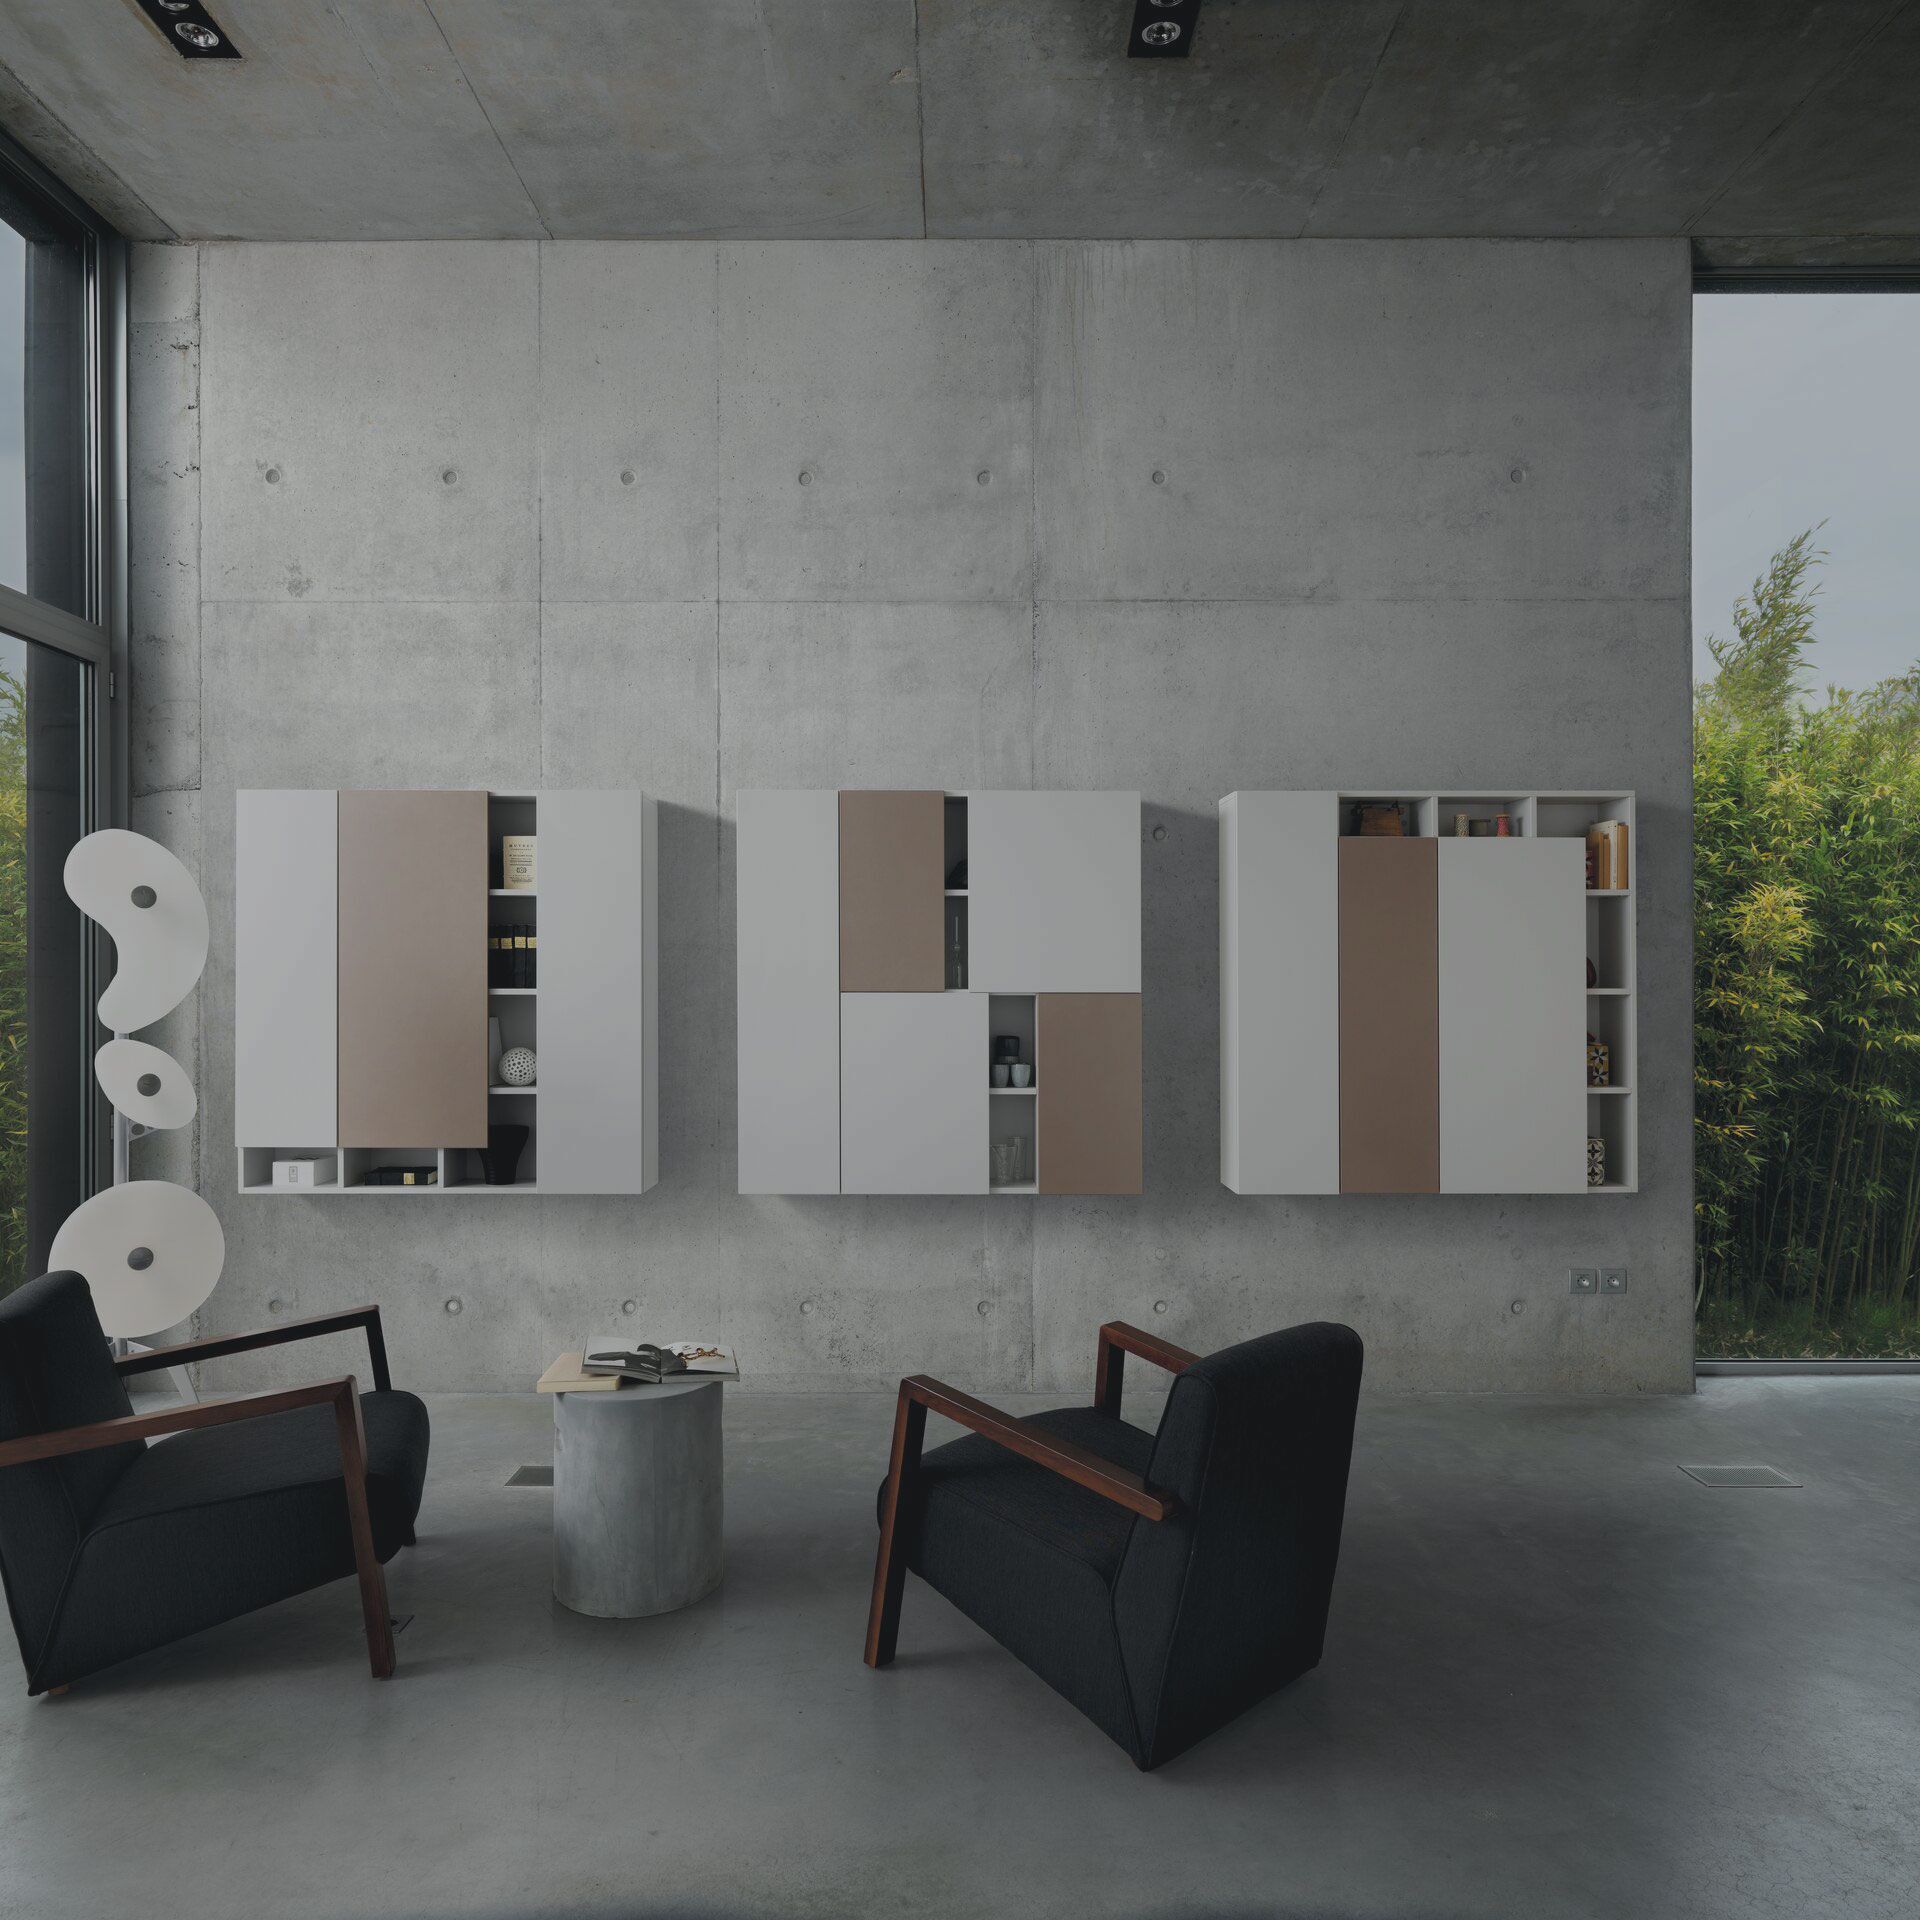 Muebles para Salones - Crea un Espacio Acogedor y Elegante